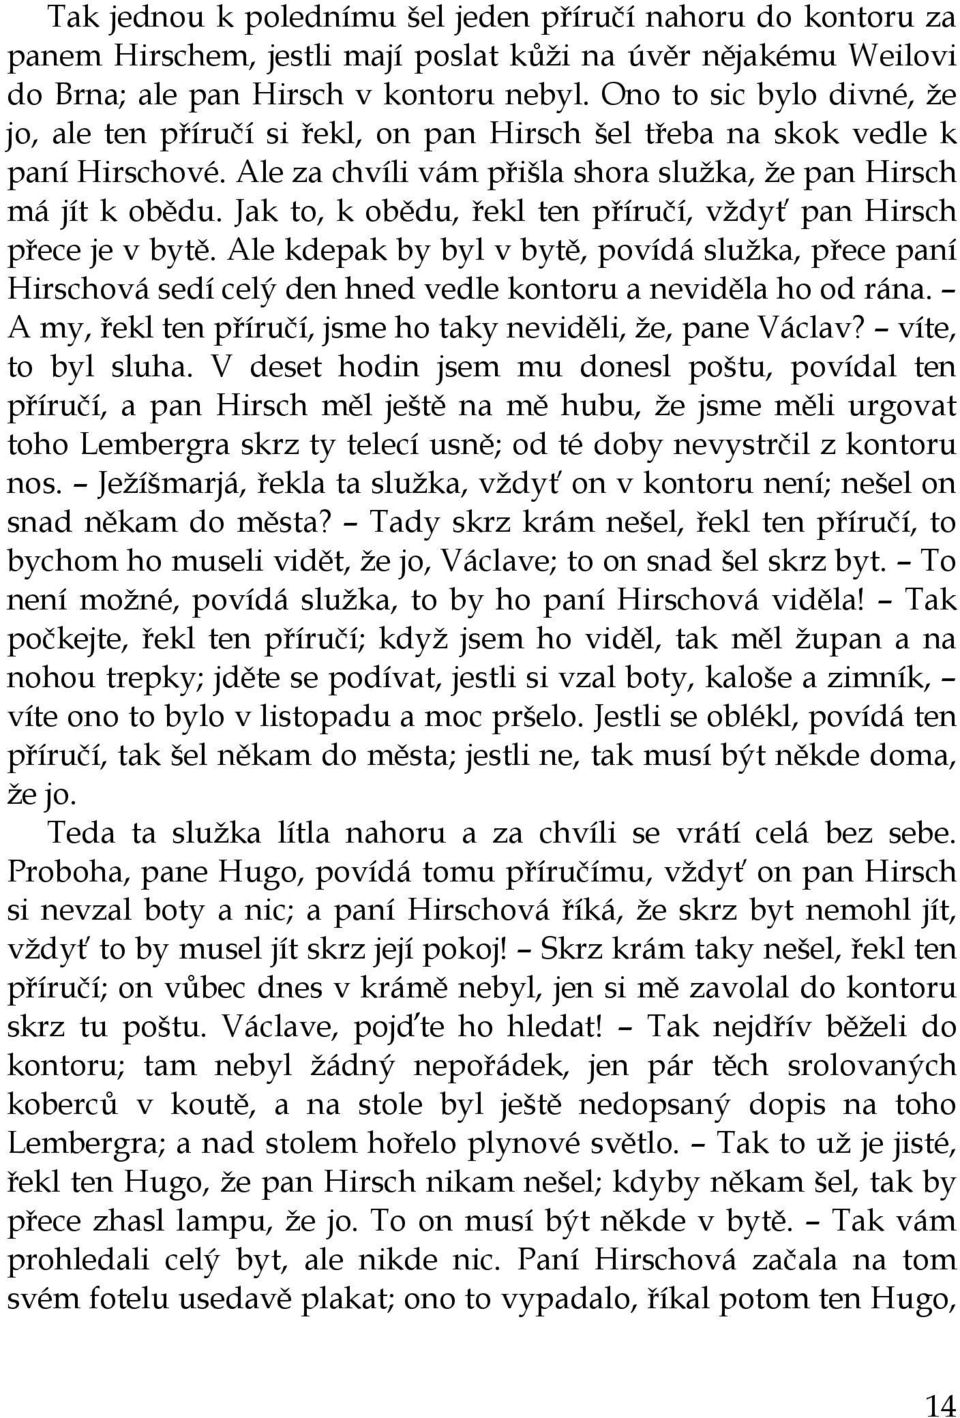 Karel Čapek POVÍDKY Z DRUHÉ KAPSY - PDF Free Download